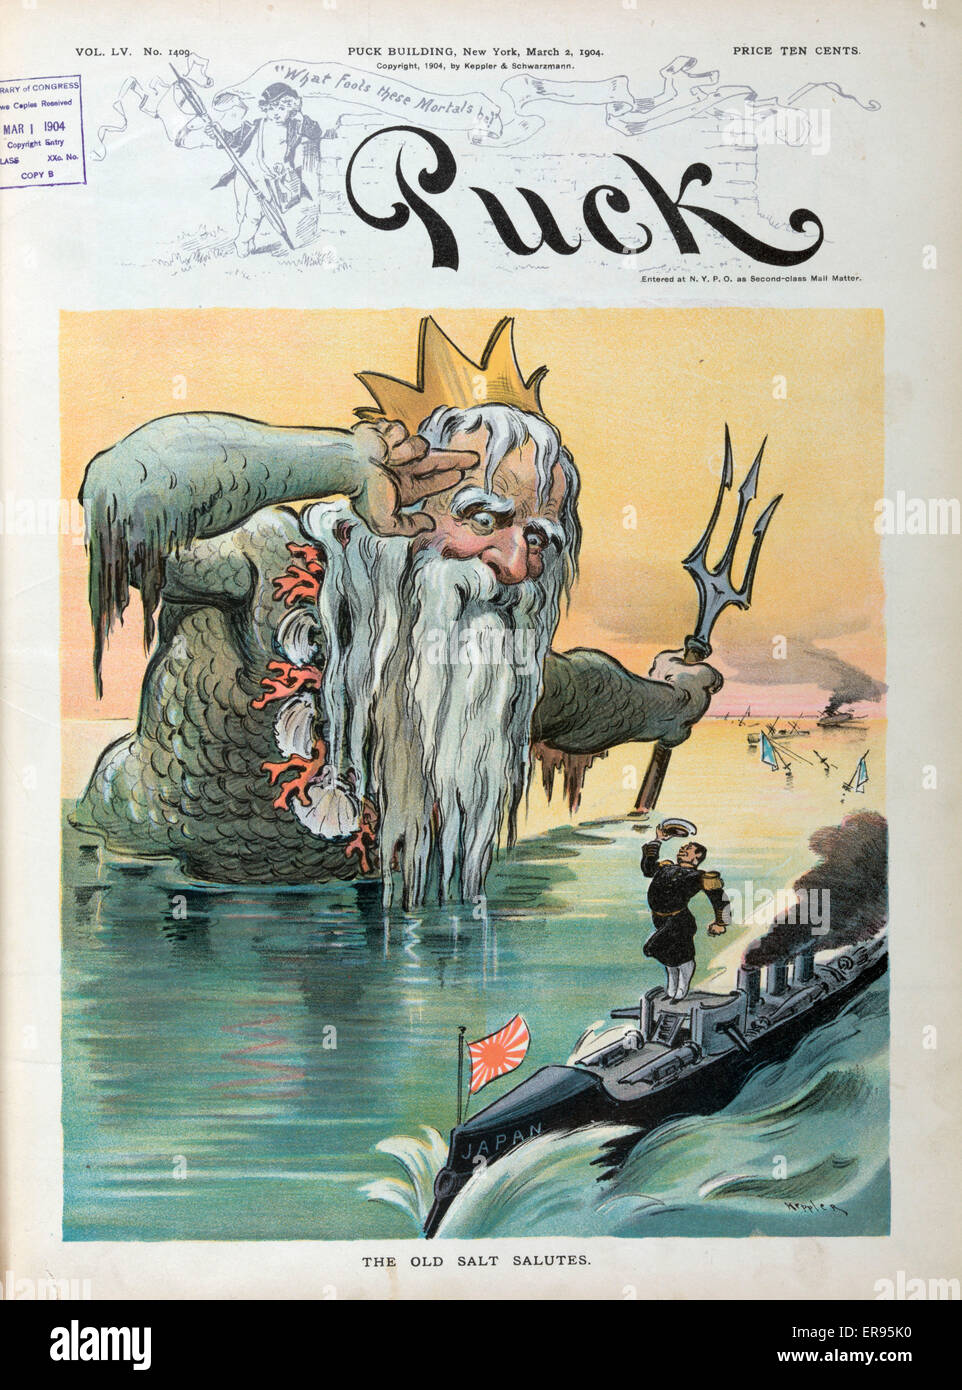 Die alte Salz begrüßt. Abbildung zeigt Neptun, der römische Gott des Meeres, salutieren, einen japanischen Admiral auf einem Kanonenboot im Hintergrund befinden sich die Ruinen der russischen Flotte. Datum, 2. März 1904. Stockfoto